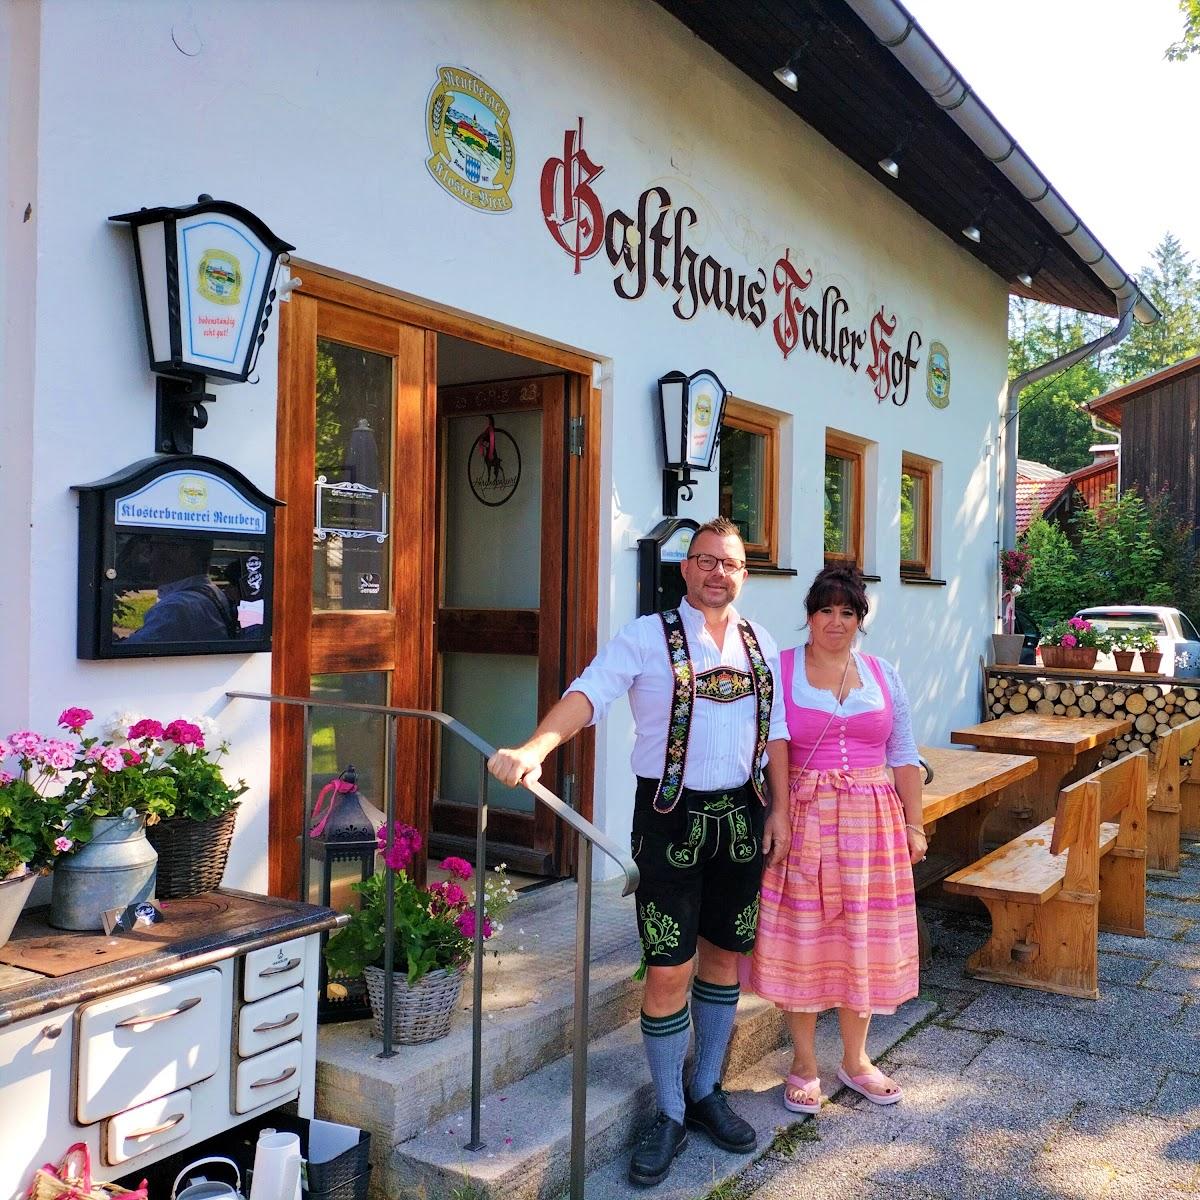 Restaurant "Gasthaus Faller Hof" in Lenggries